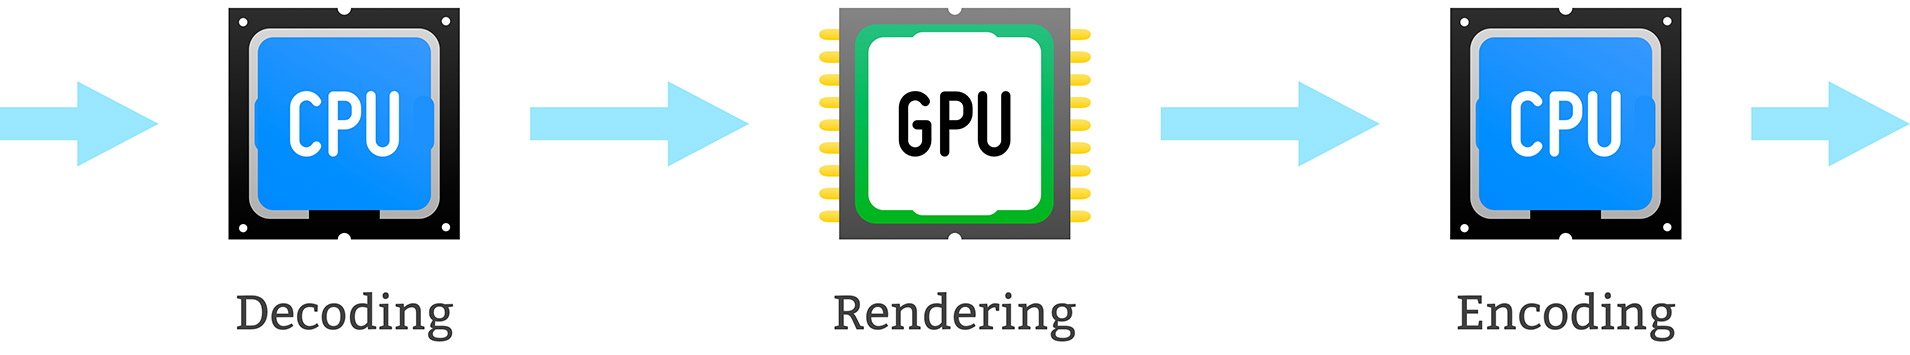 独自のハイブリッドCPU / GPUベースの高速トランスコーディングエンジン